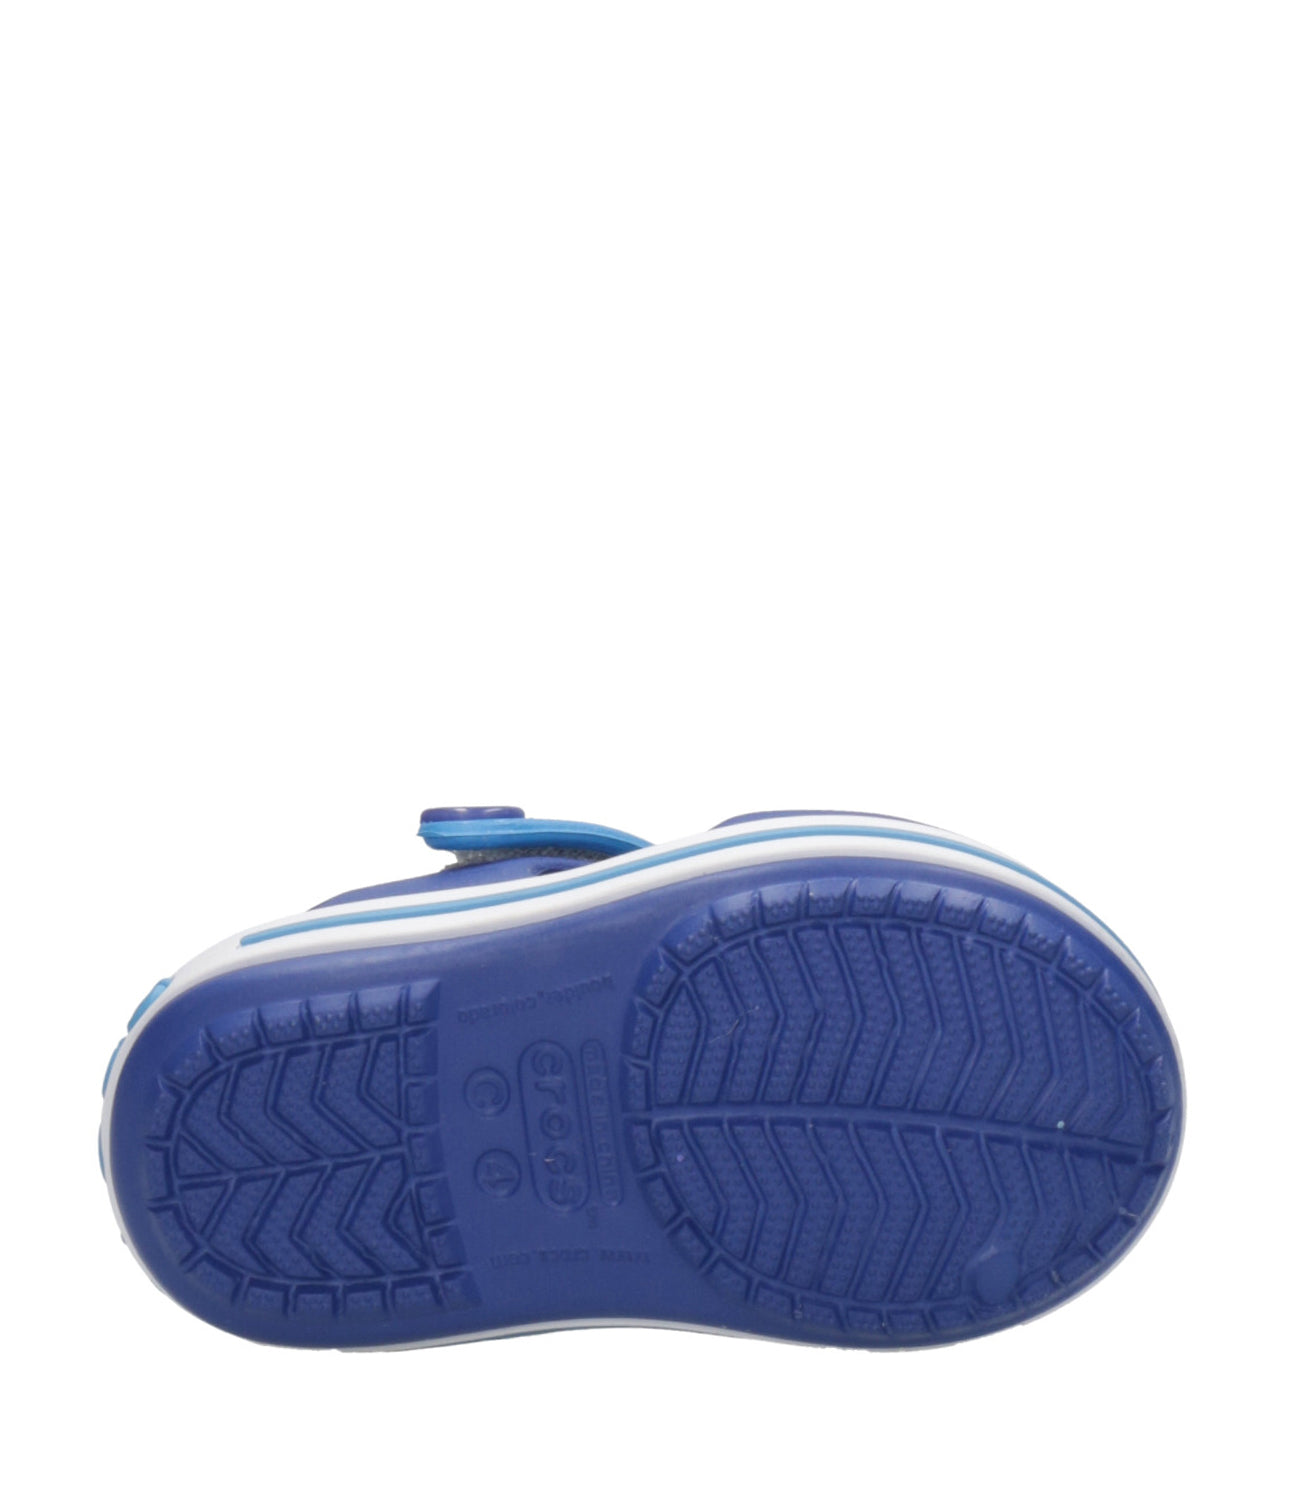 Crocs Kids | Sabot Crocband Sandal Blue and Light Blue